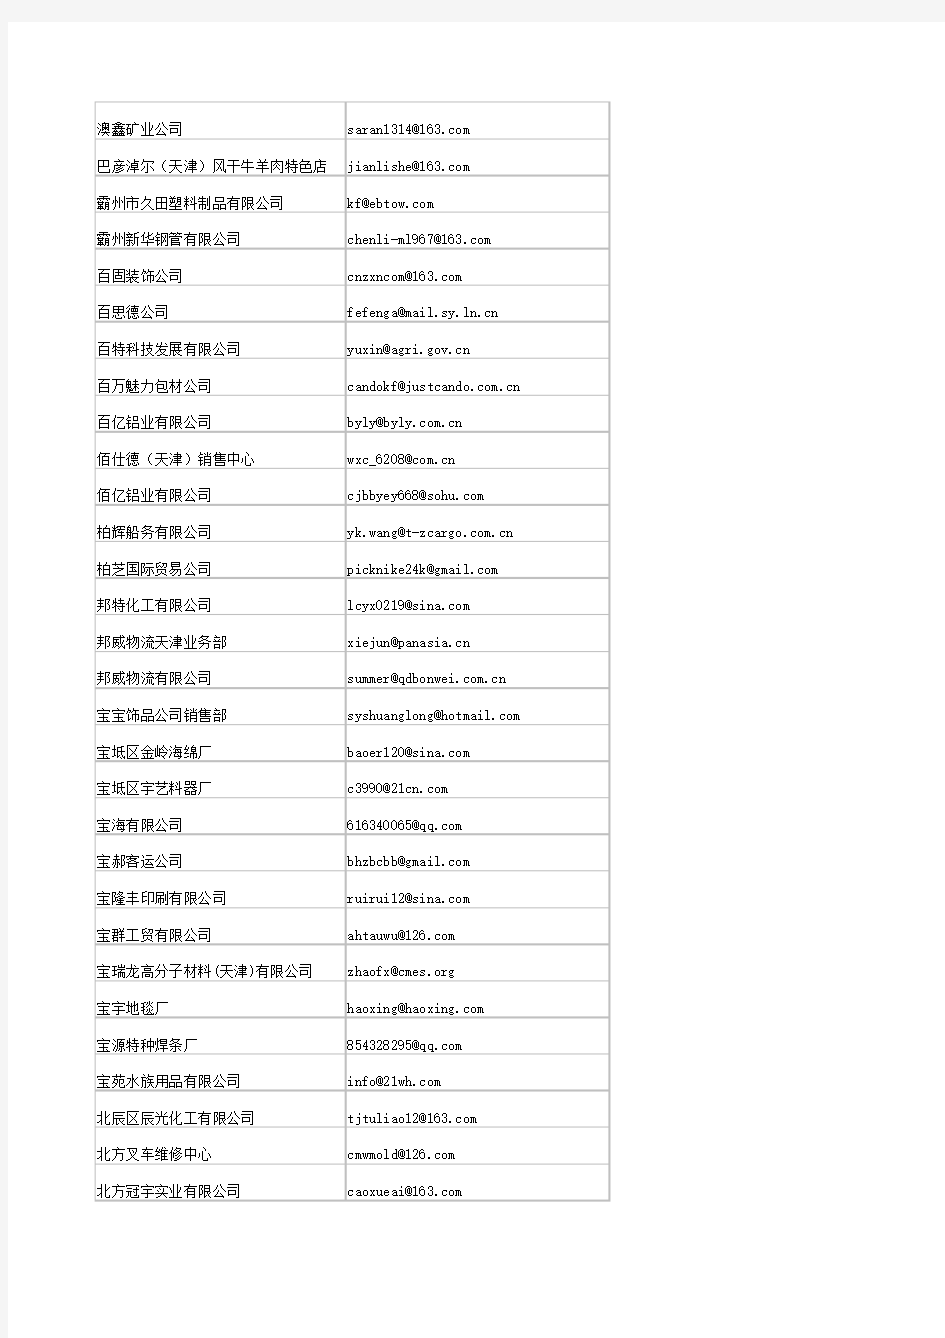 天津市企业电子邮箱名录(2011版)